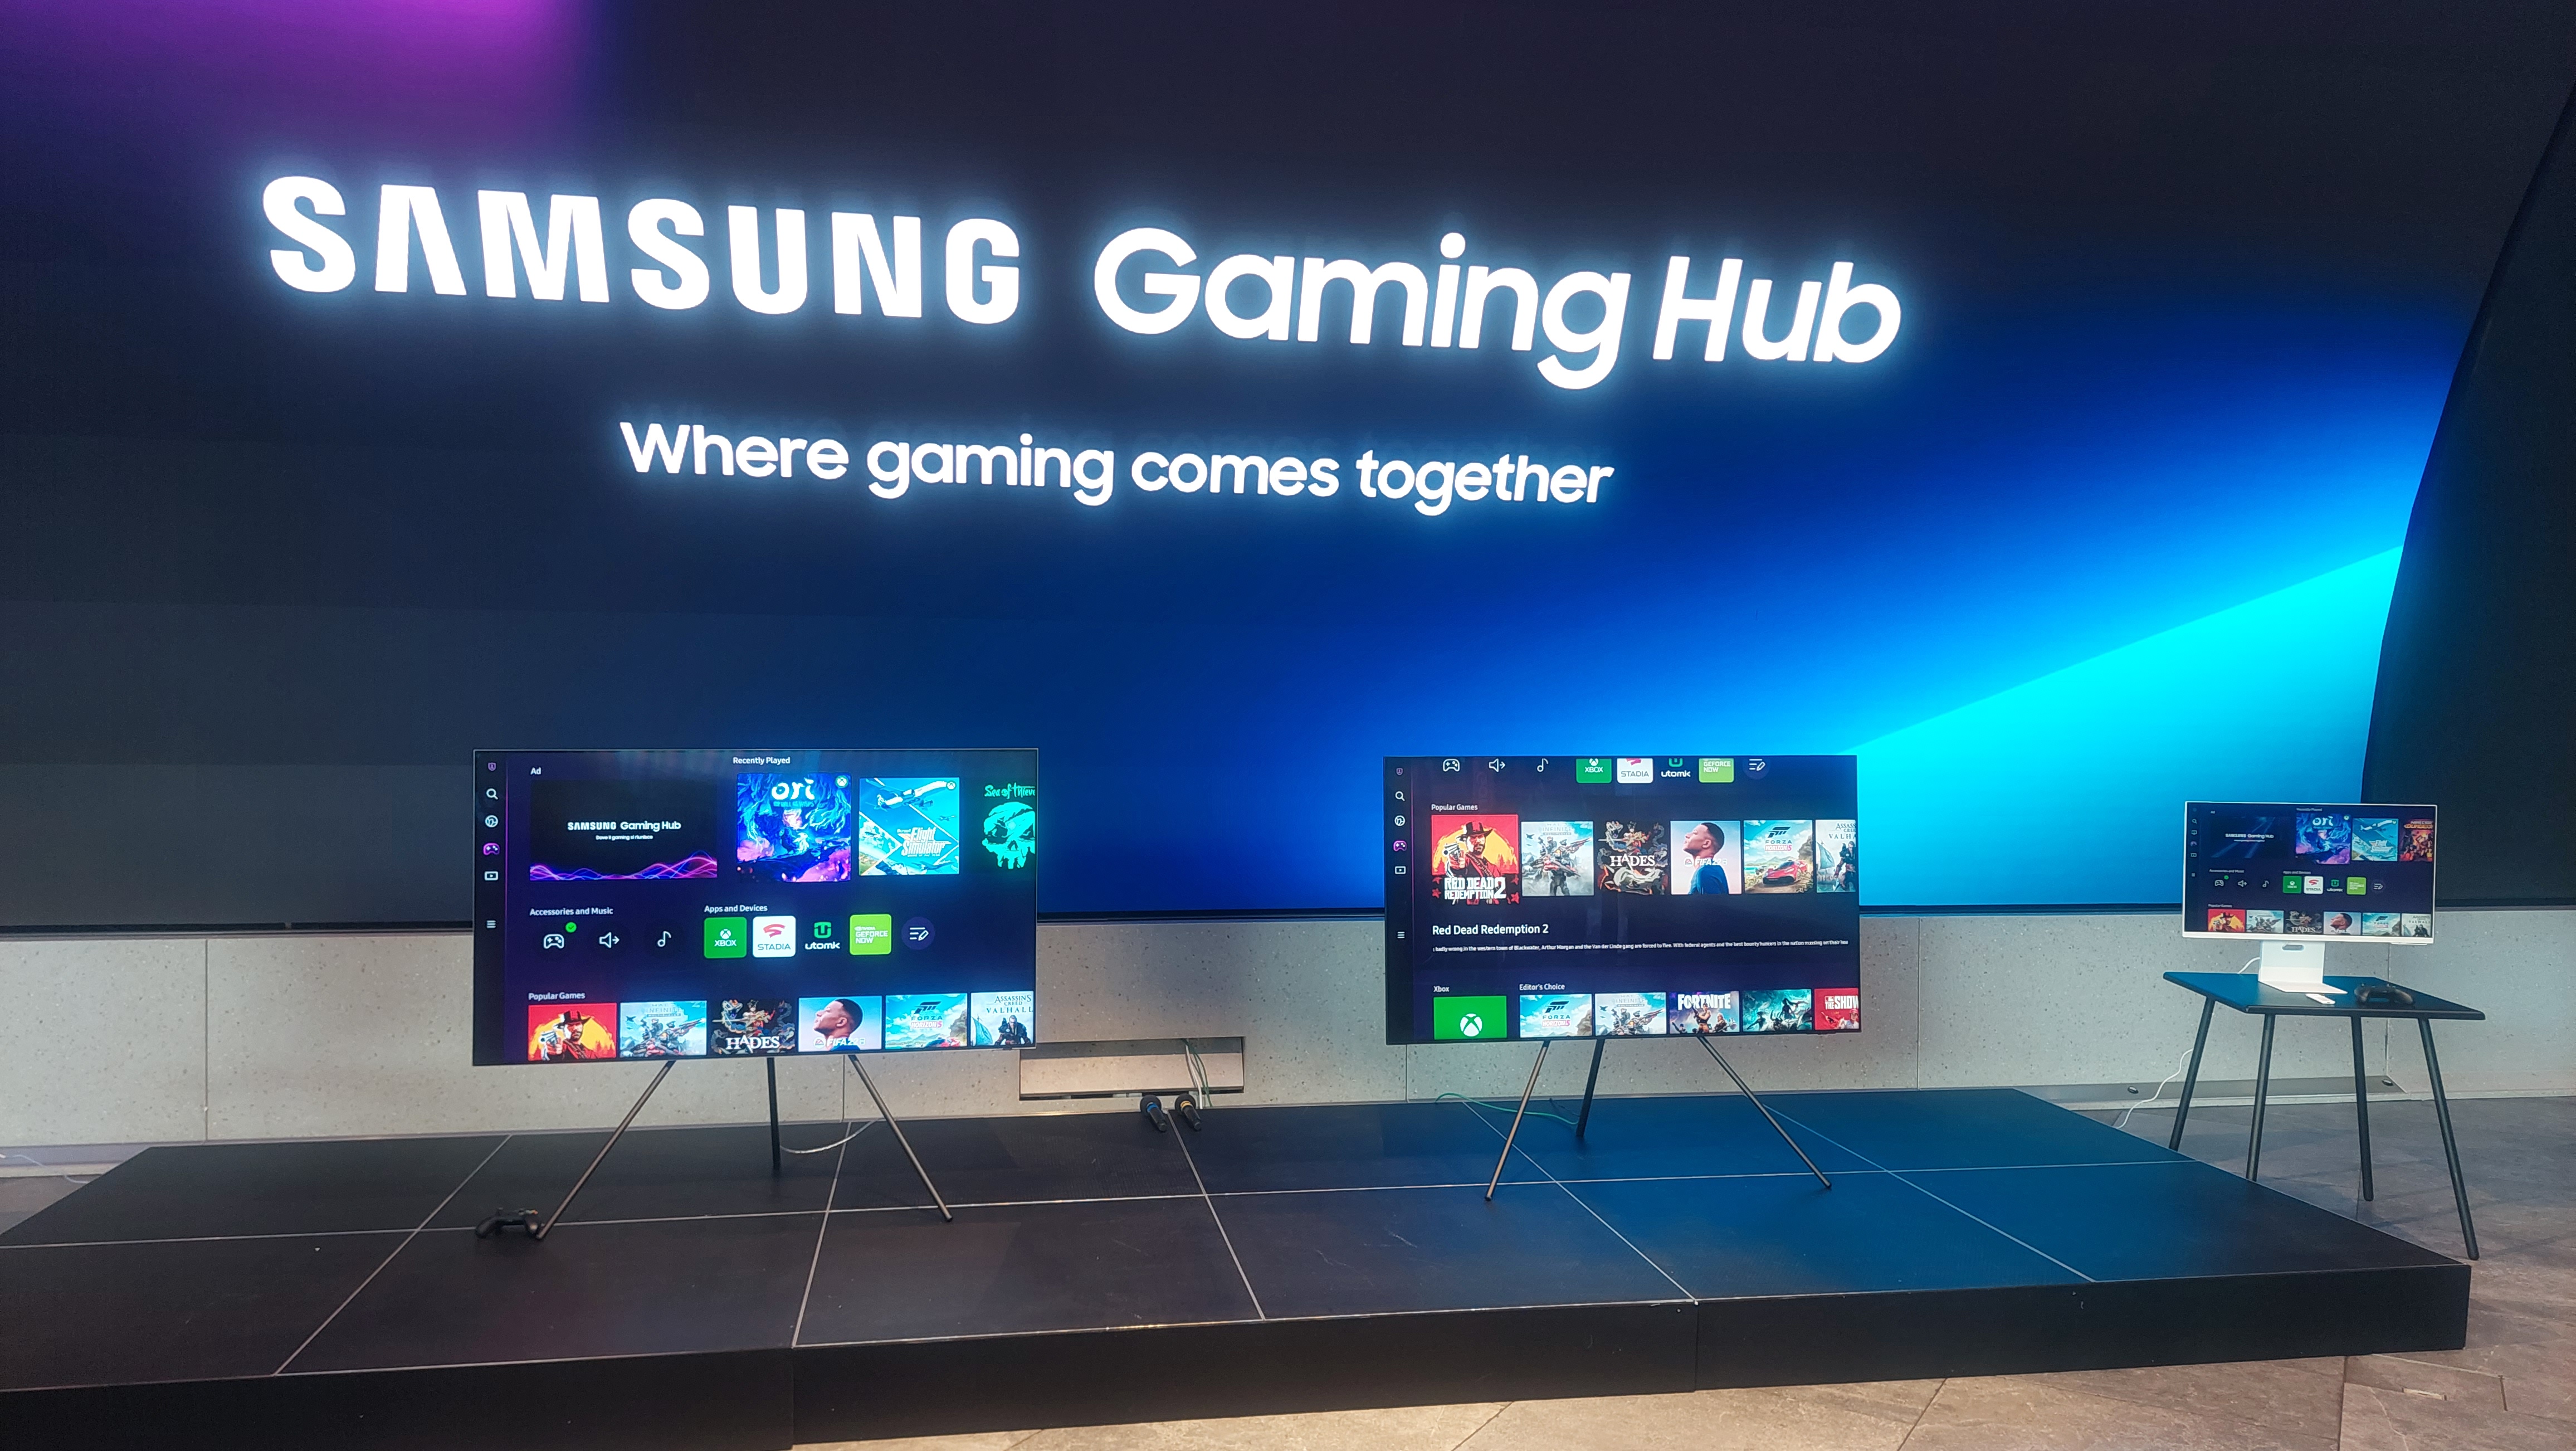 Conheça o Samsung Gaming Hub